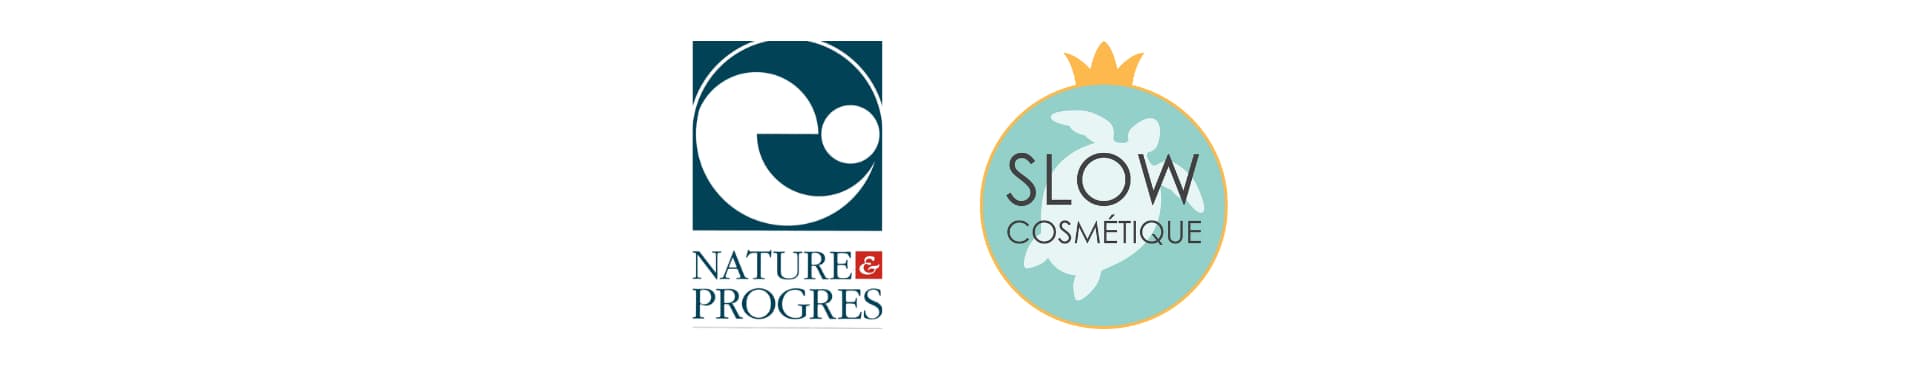 Certifications Slow cosmétique et Nature & progrès pour des cosmétiques naturels et certifiés biologiques